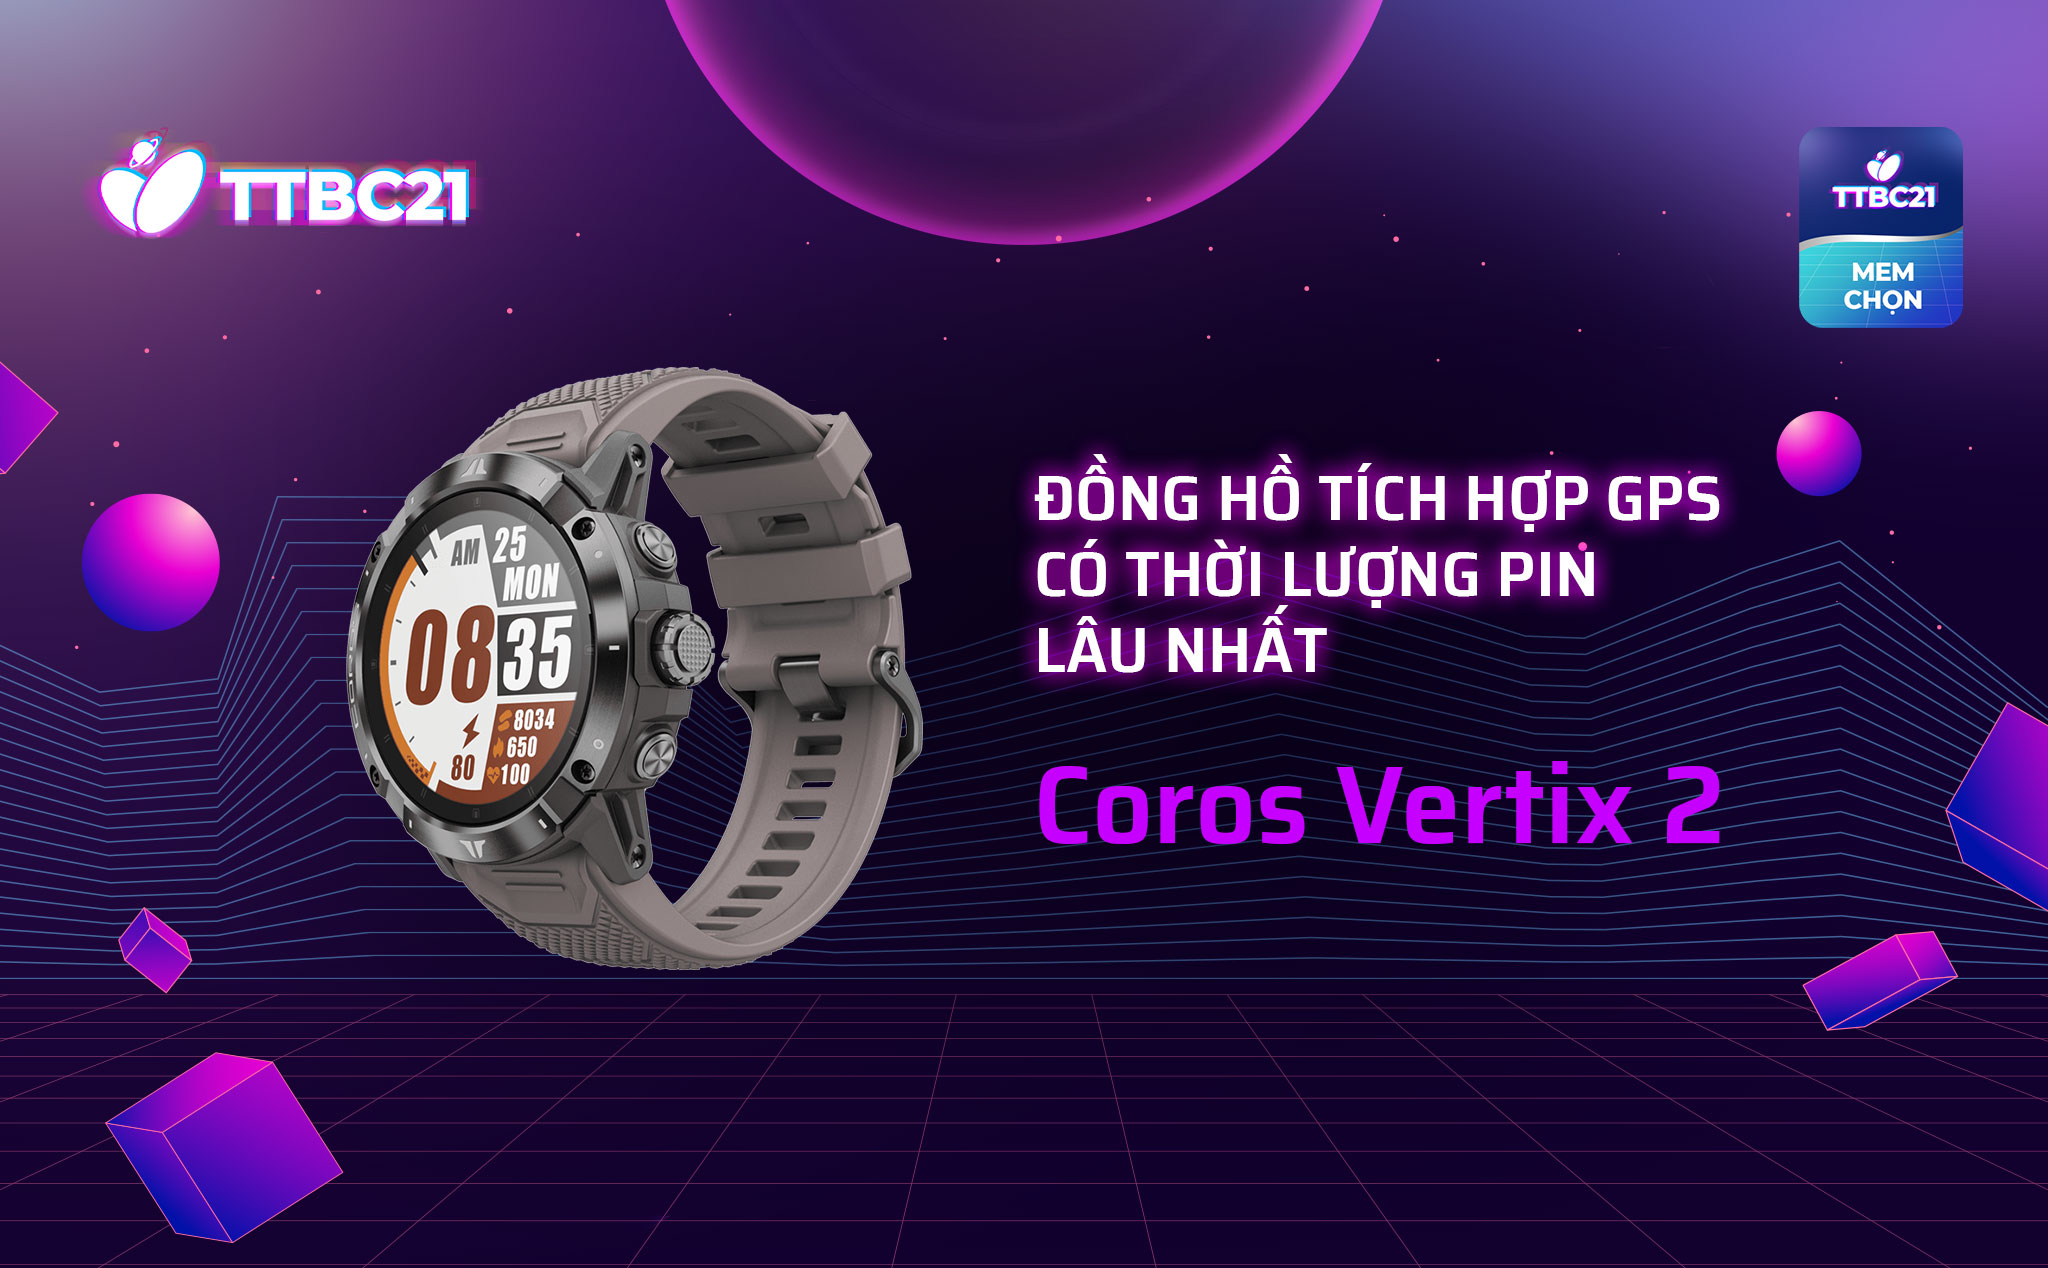 TTBC21 - Mod Choice: Đồng hồ tích hợp GPS có thời lượng pin lâu nhất - Coros Vertix 2